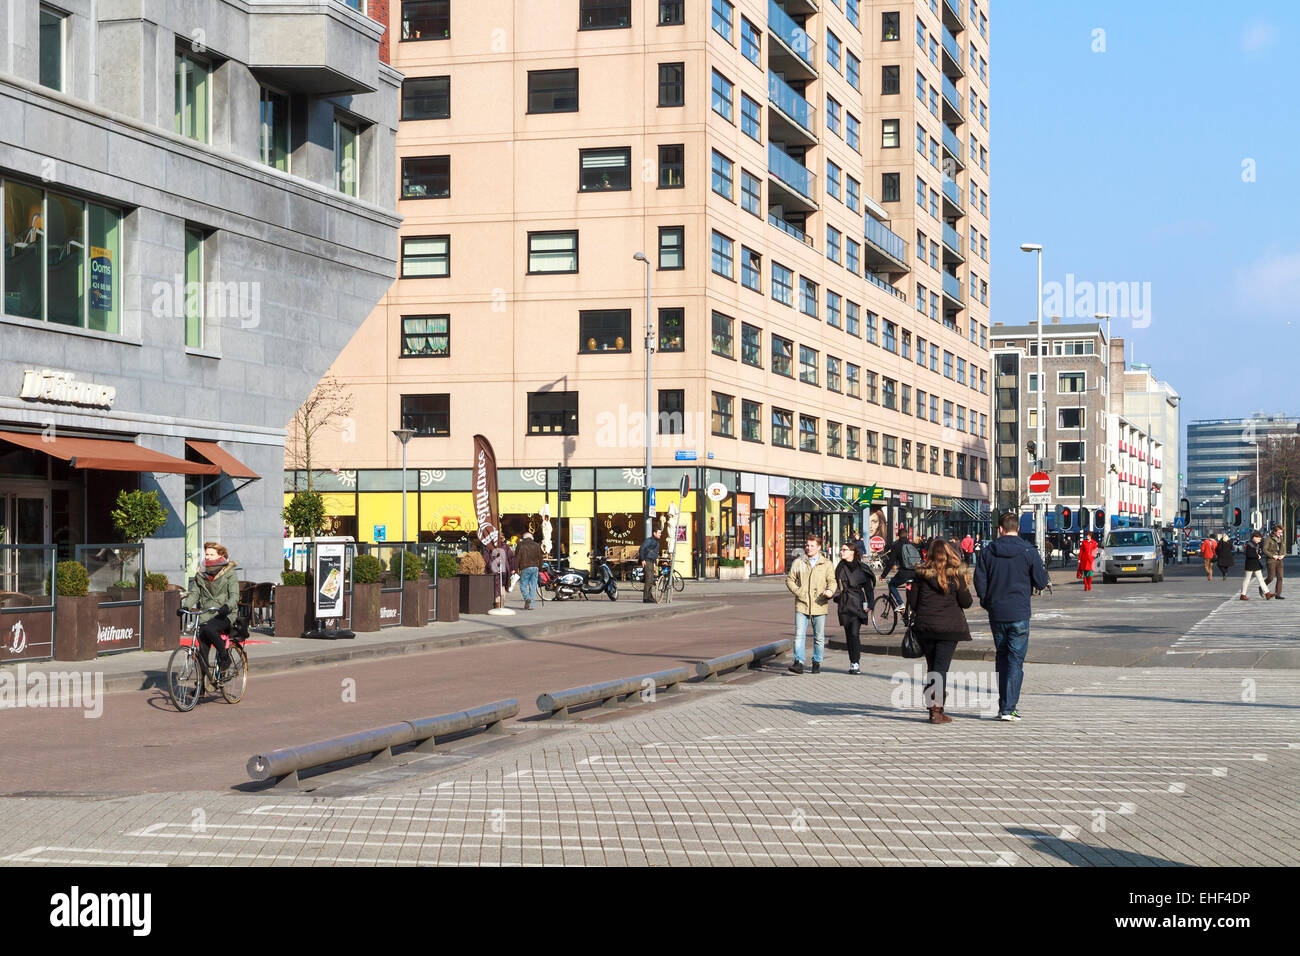 ROTTERDAM, Paesi Bassi - 19 febbraio 2015: ciclista, pedoni e gli acquirenti su un tratto pedonale di una strada dello shopping. Foto Stock